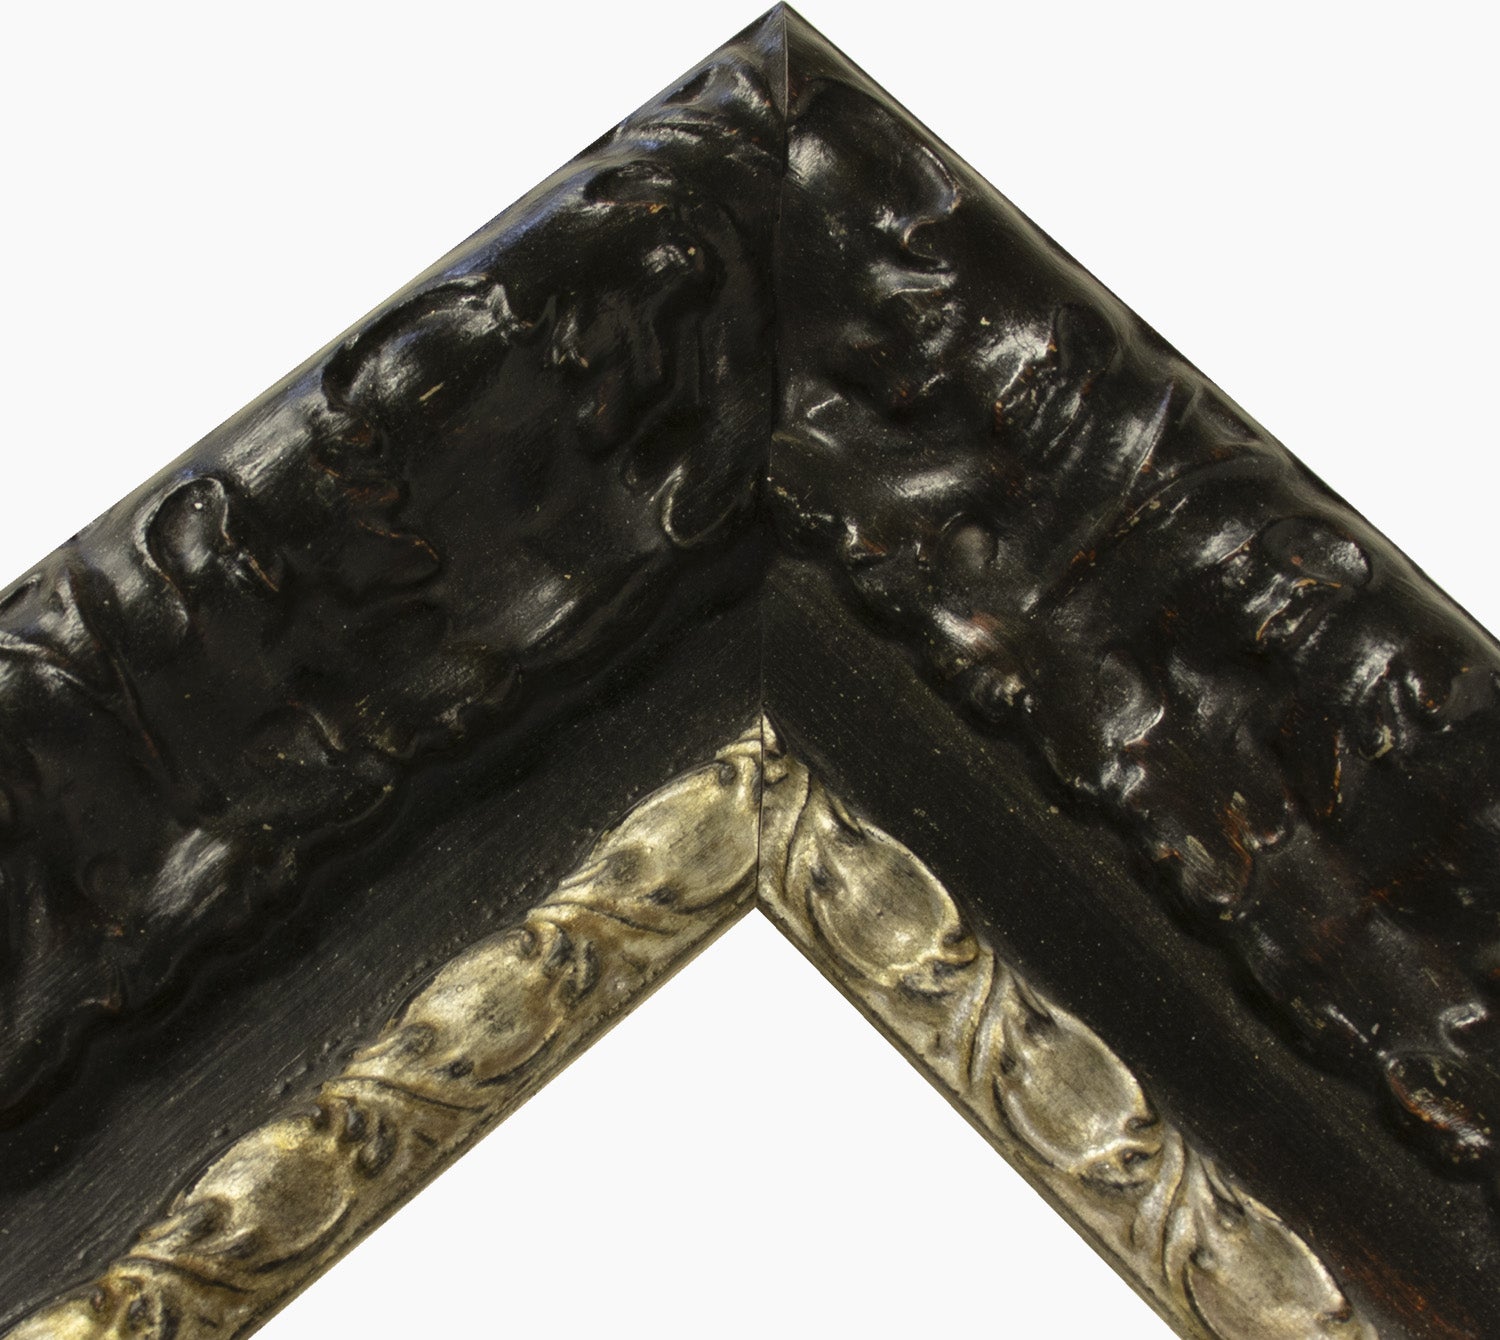 4980.602 cadre en bois noir avec fil d'argent mesure de profil 100x60 mm Lombarda cornici S.n.c.